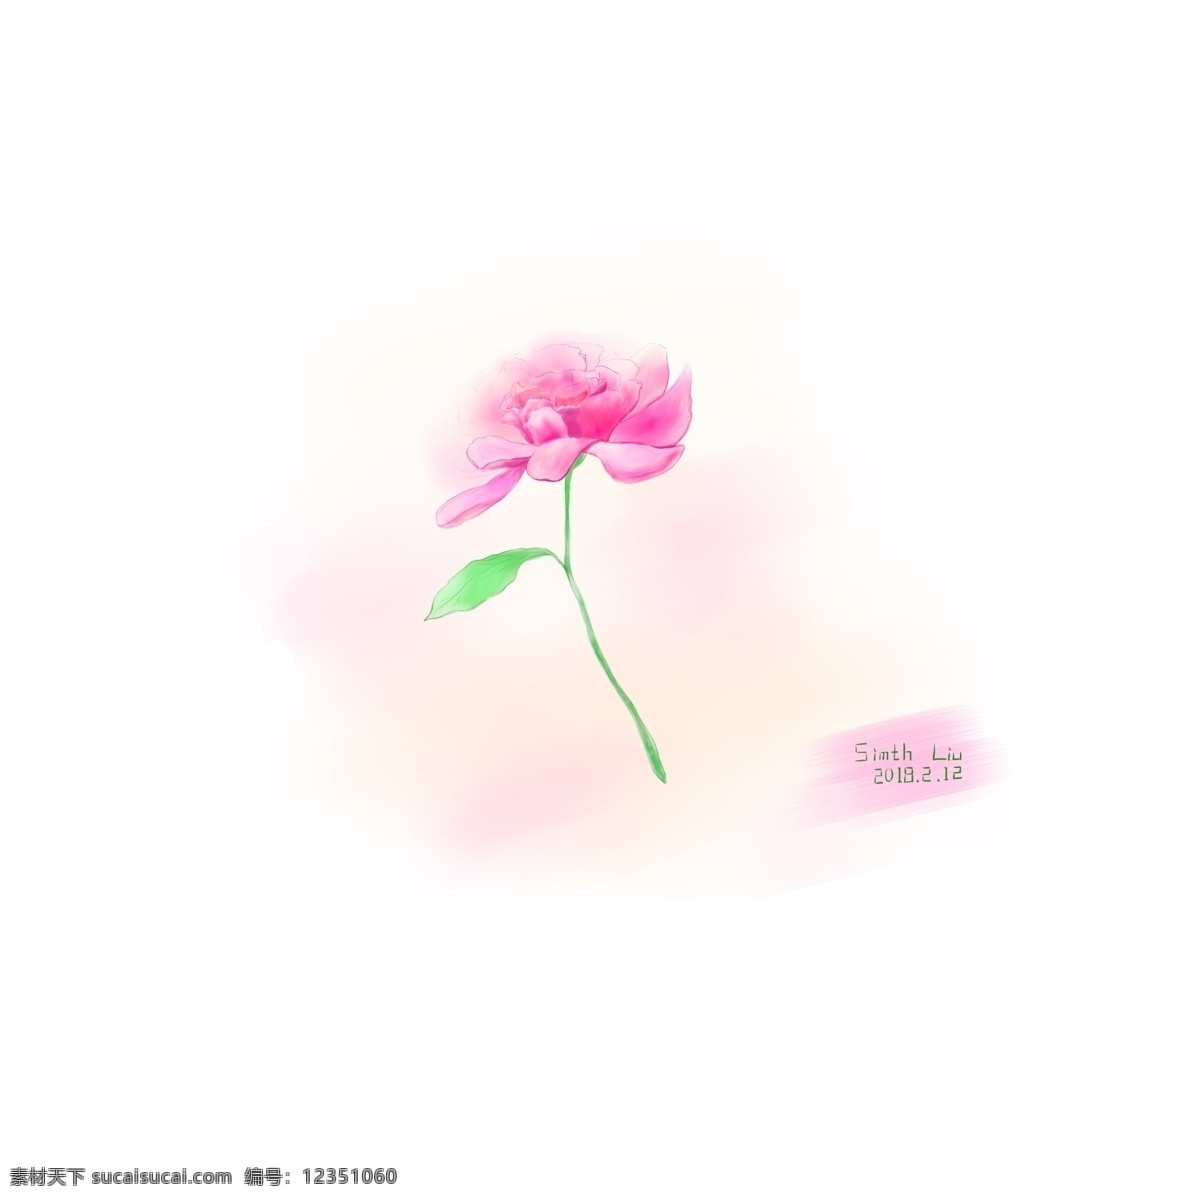 那年 送给 朵 玫瑰 爱情 插画 唯美 浪漫 清新 手绘 情感表达 原创 粉色